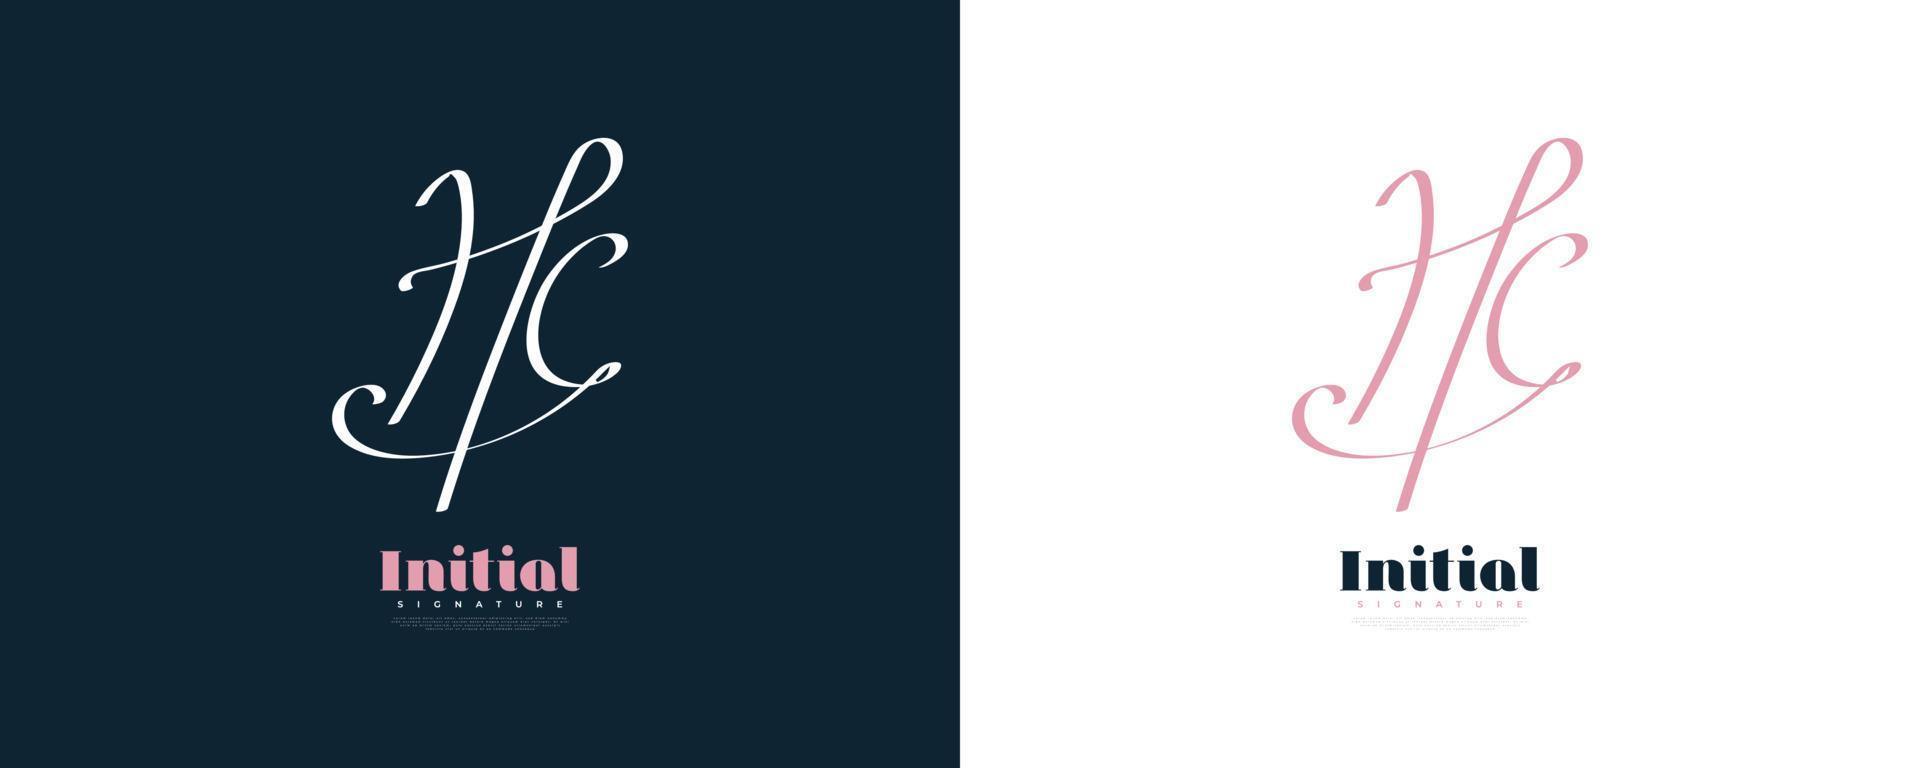 design de logotipo inicial h e c em estilo de caligrafia elegante e minimalista. logotipo ou símbolo de assinatura hc para casamento, moda, joias, boutique e identidade comercial vetor